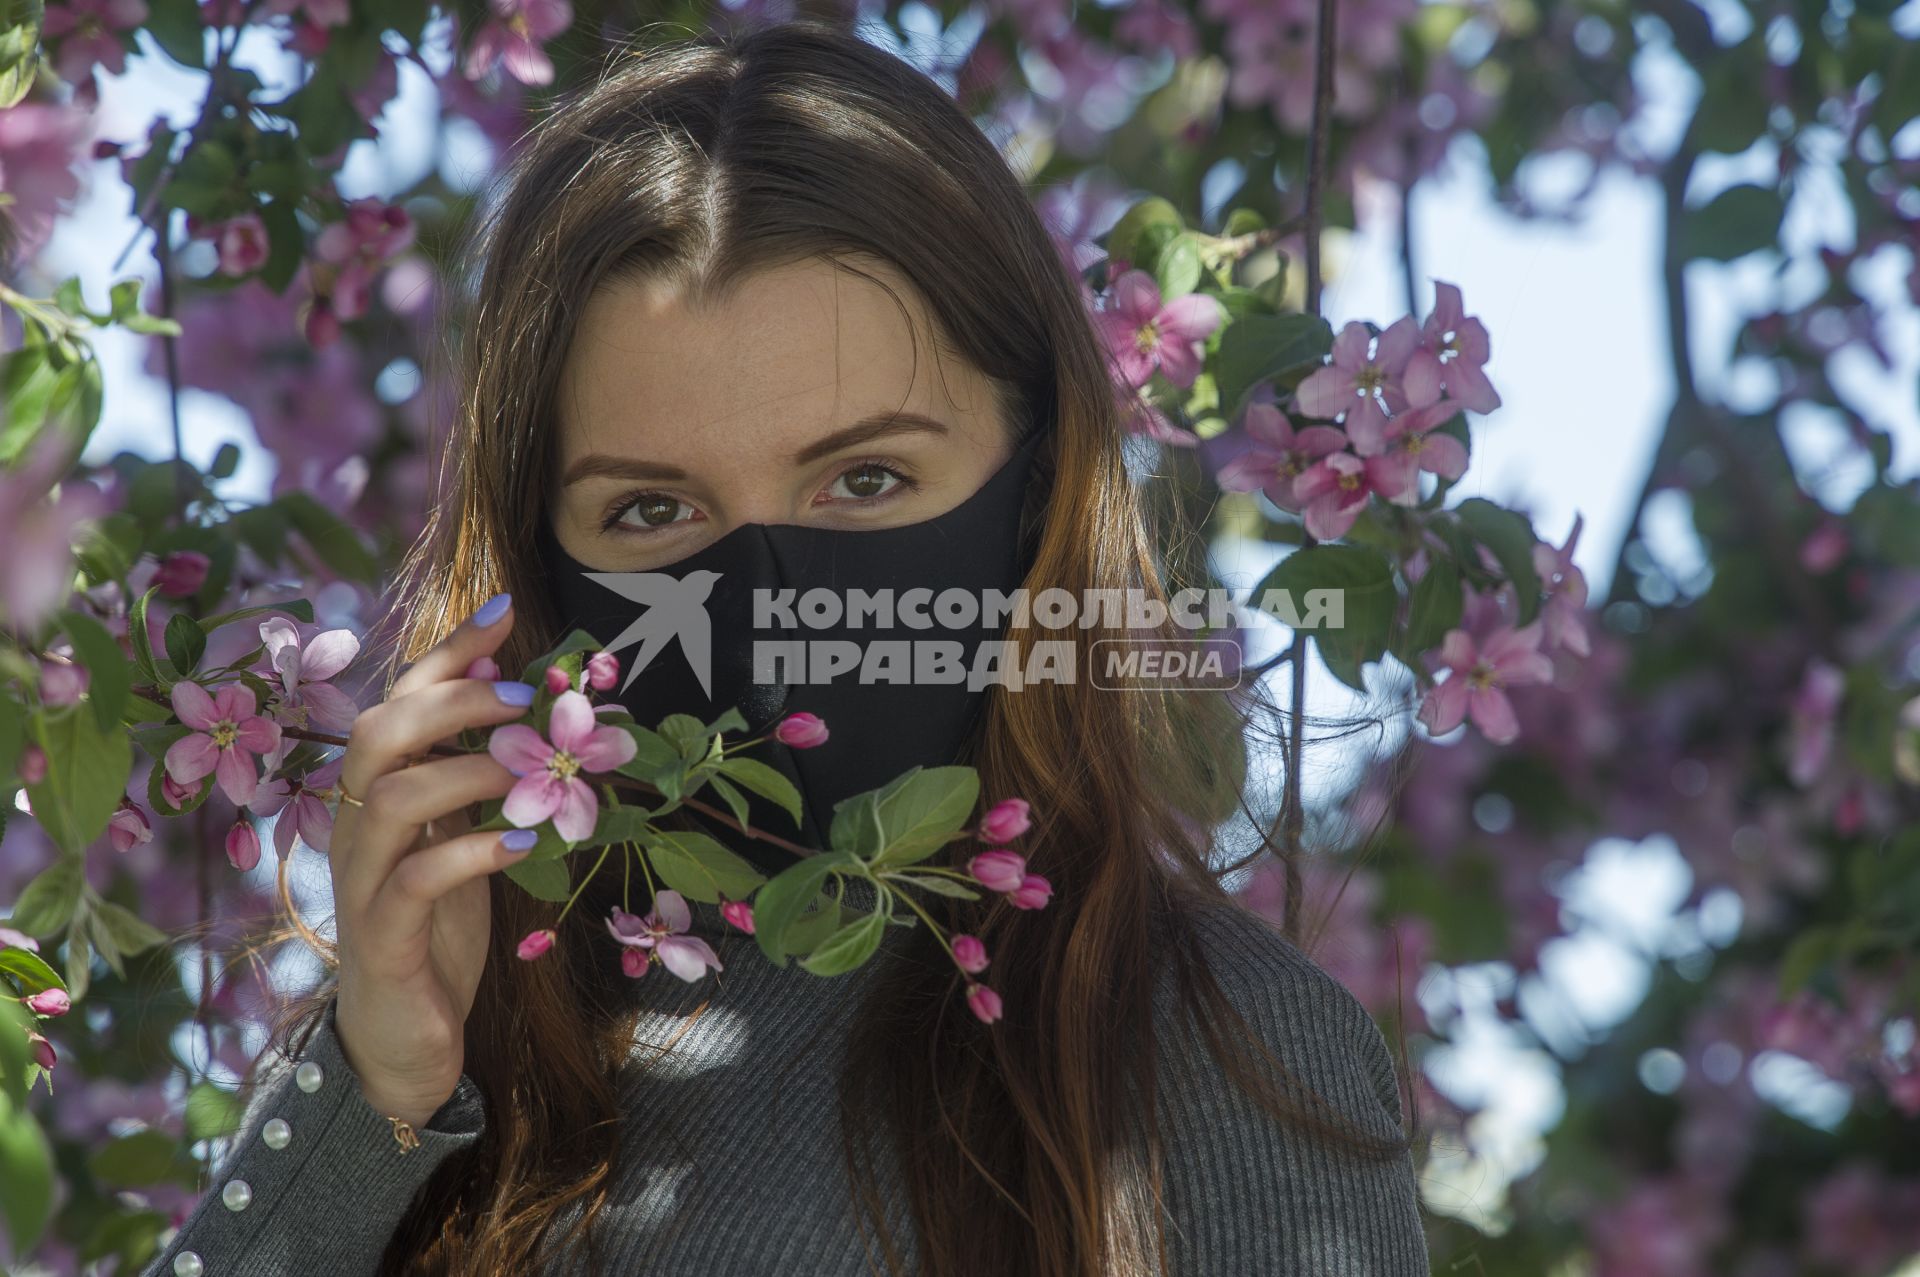 Екатеринбург. Девушка в защитной маске фотографируется у цветущей яблони,  во время режима самоизоляции введеного для нераспространения новой коронавирусной инфекции COVID-19